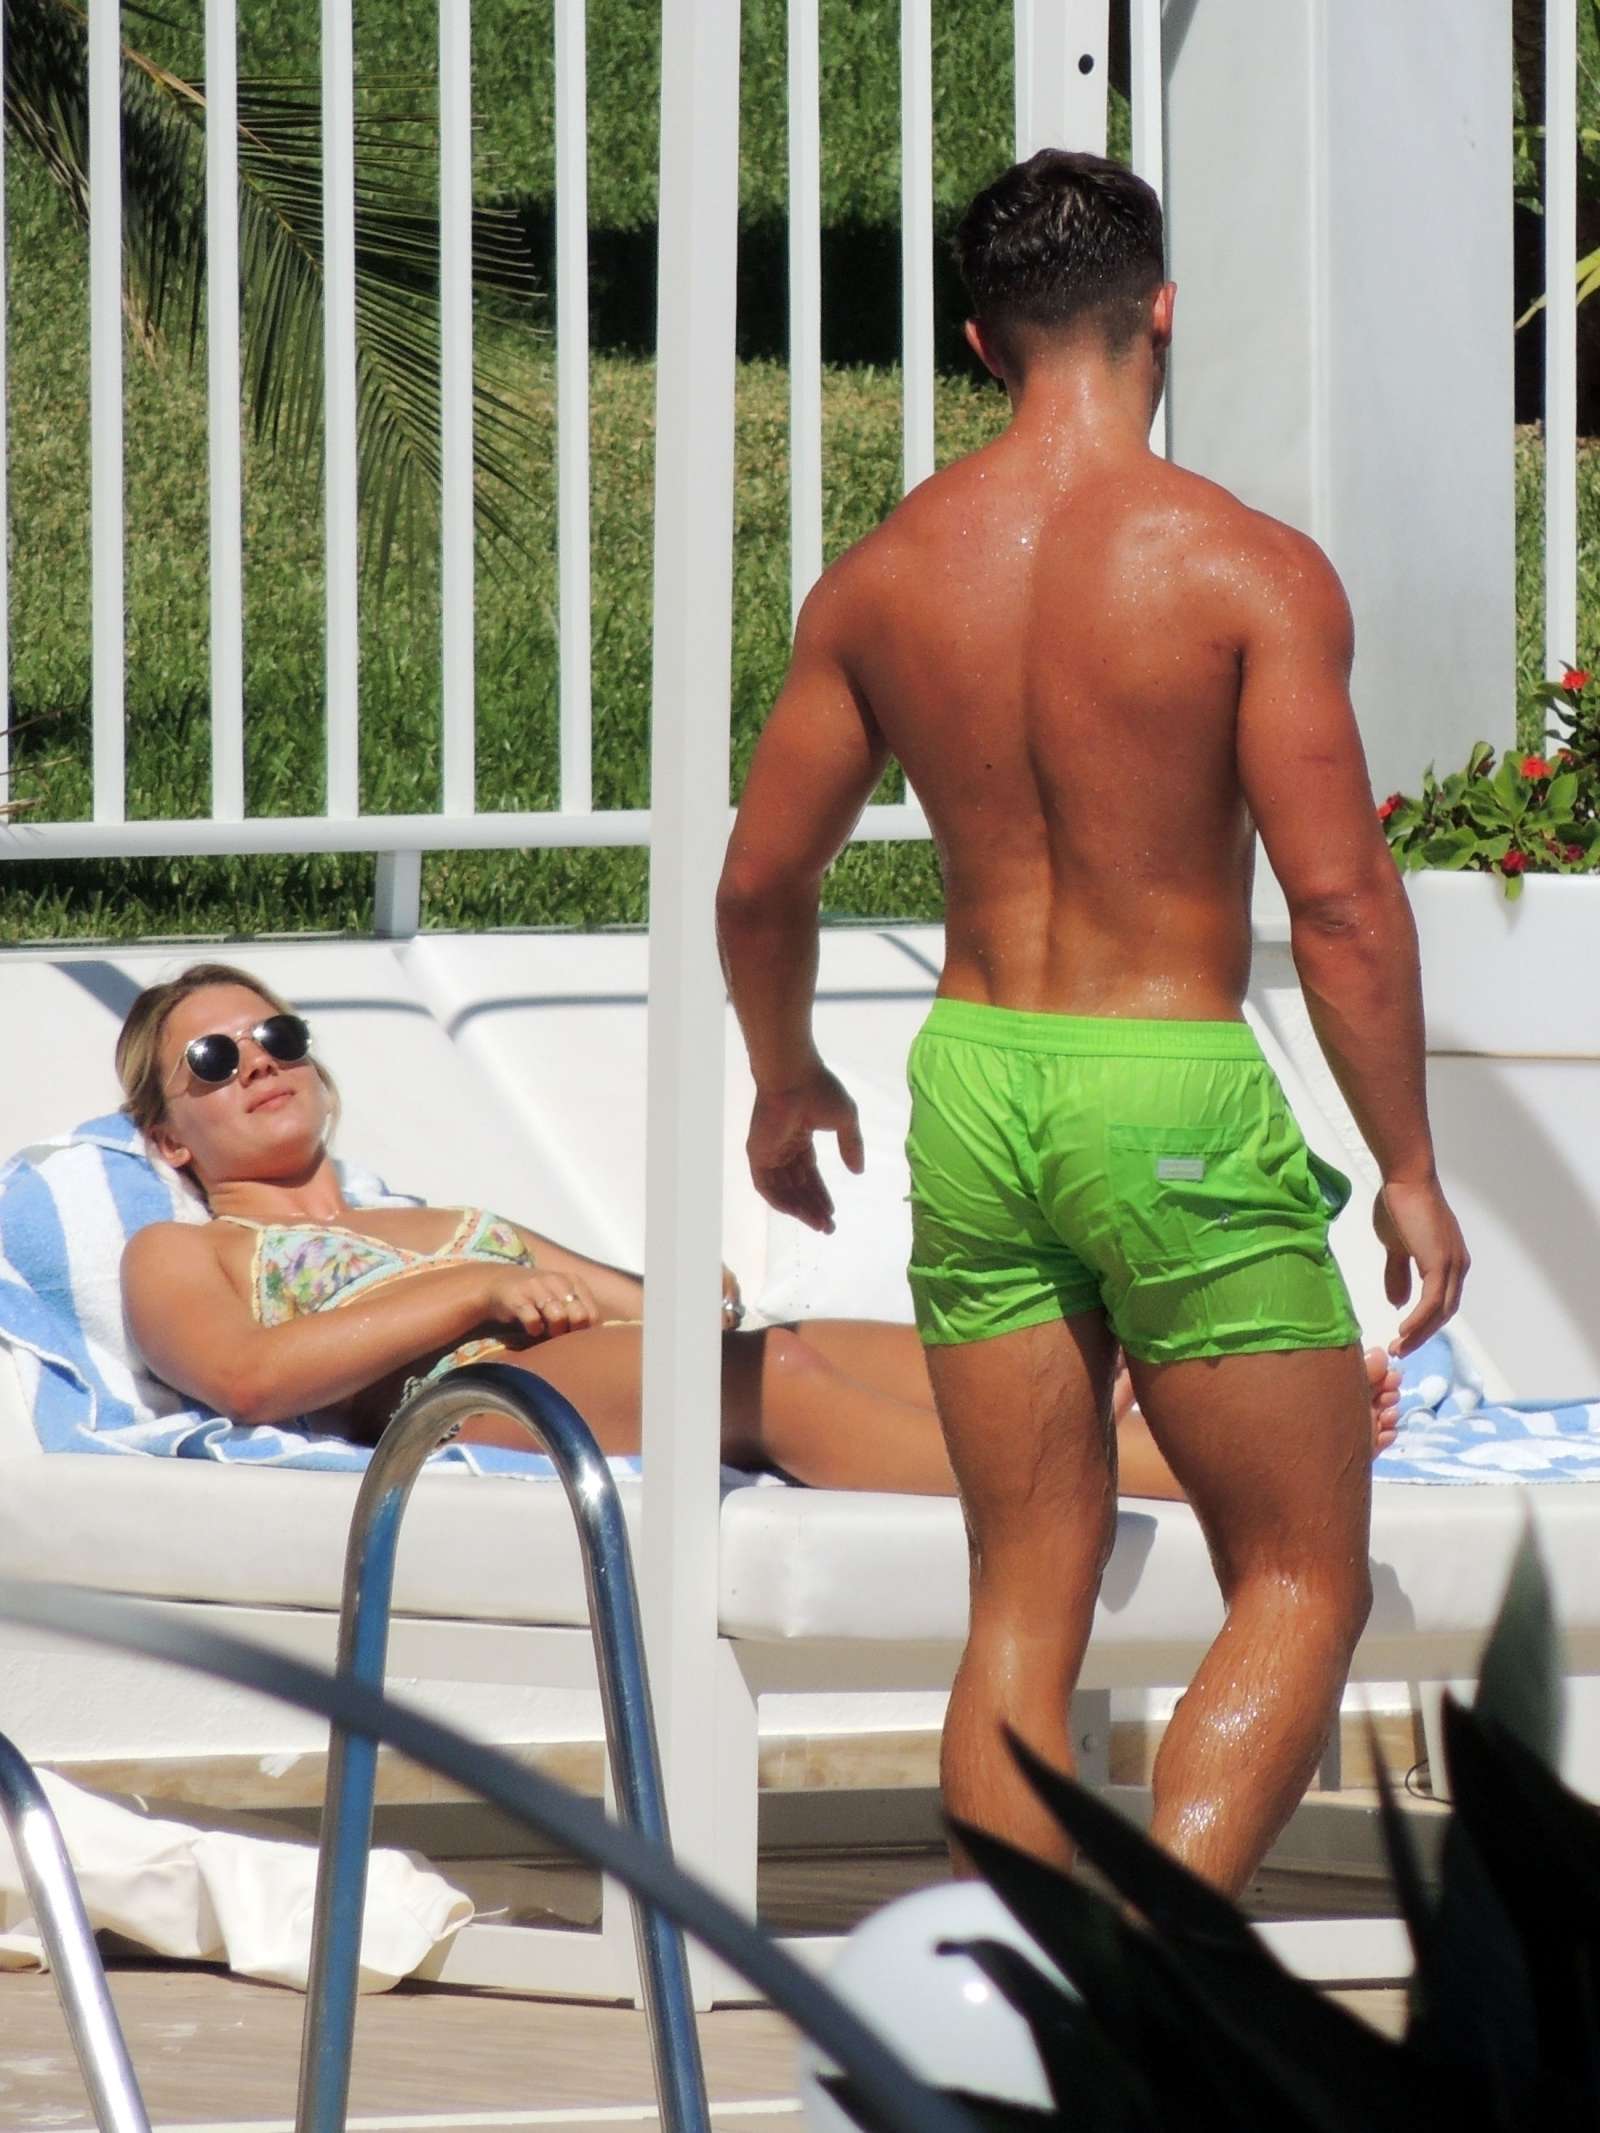 Louisa Johnson in Bikini at a pool in Marbella